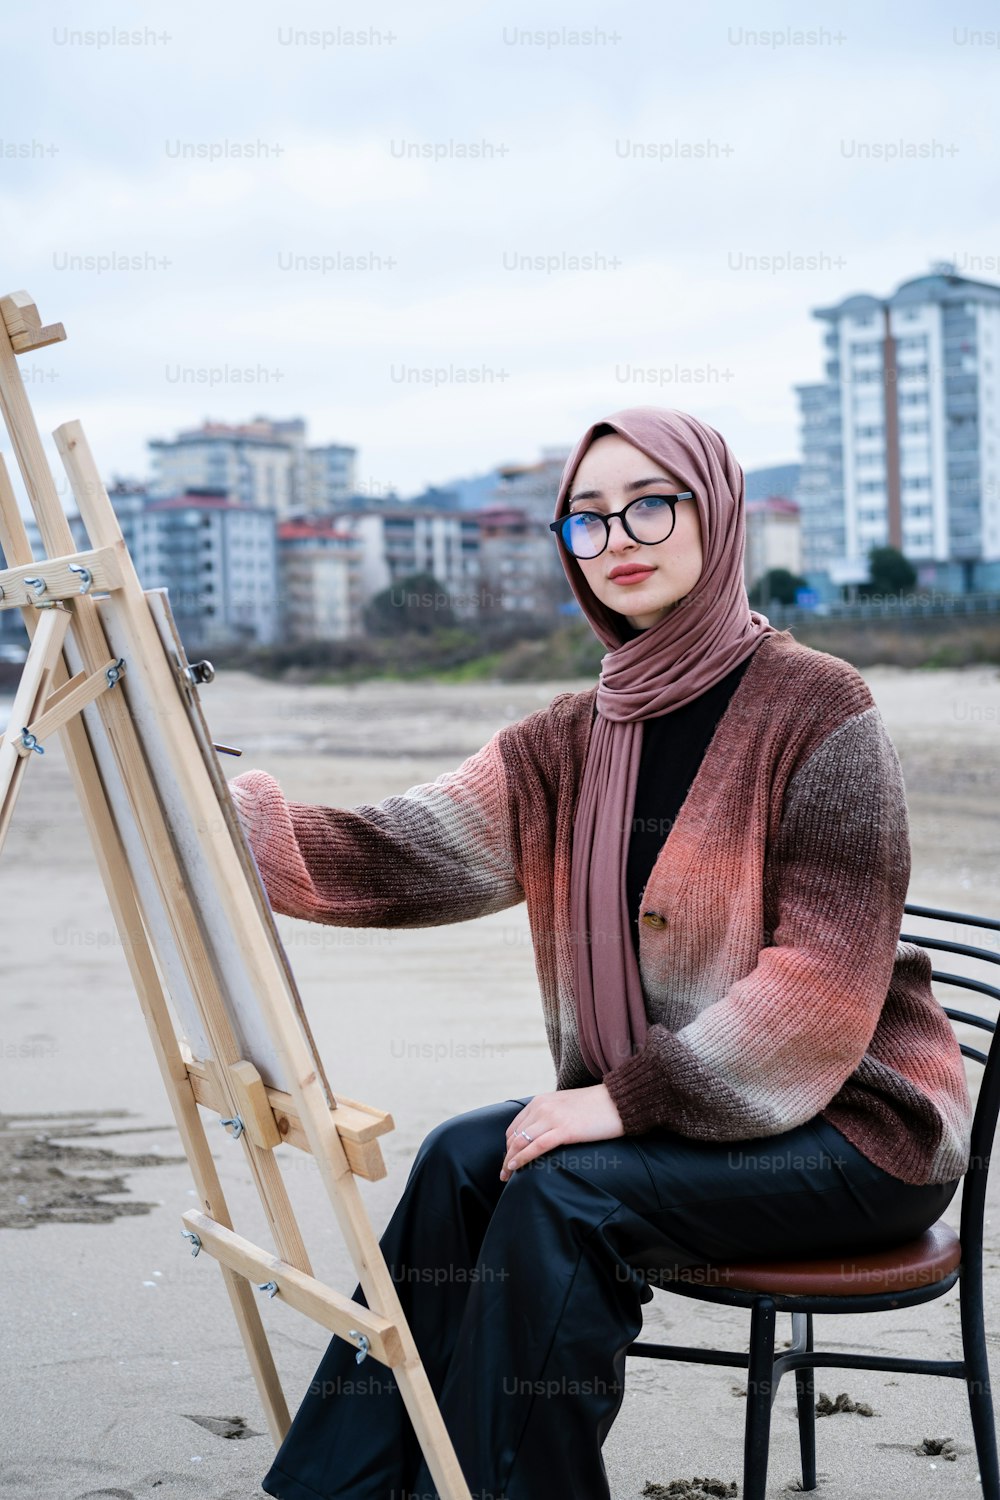 Una donna in un hijab seduta su una sedia con un cavalletto da pittura